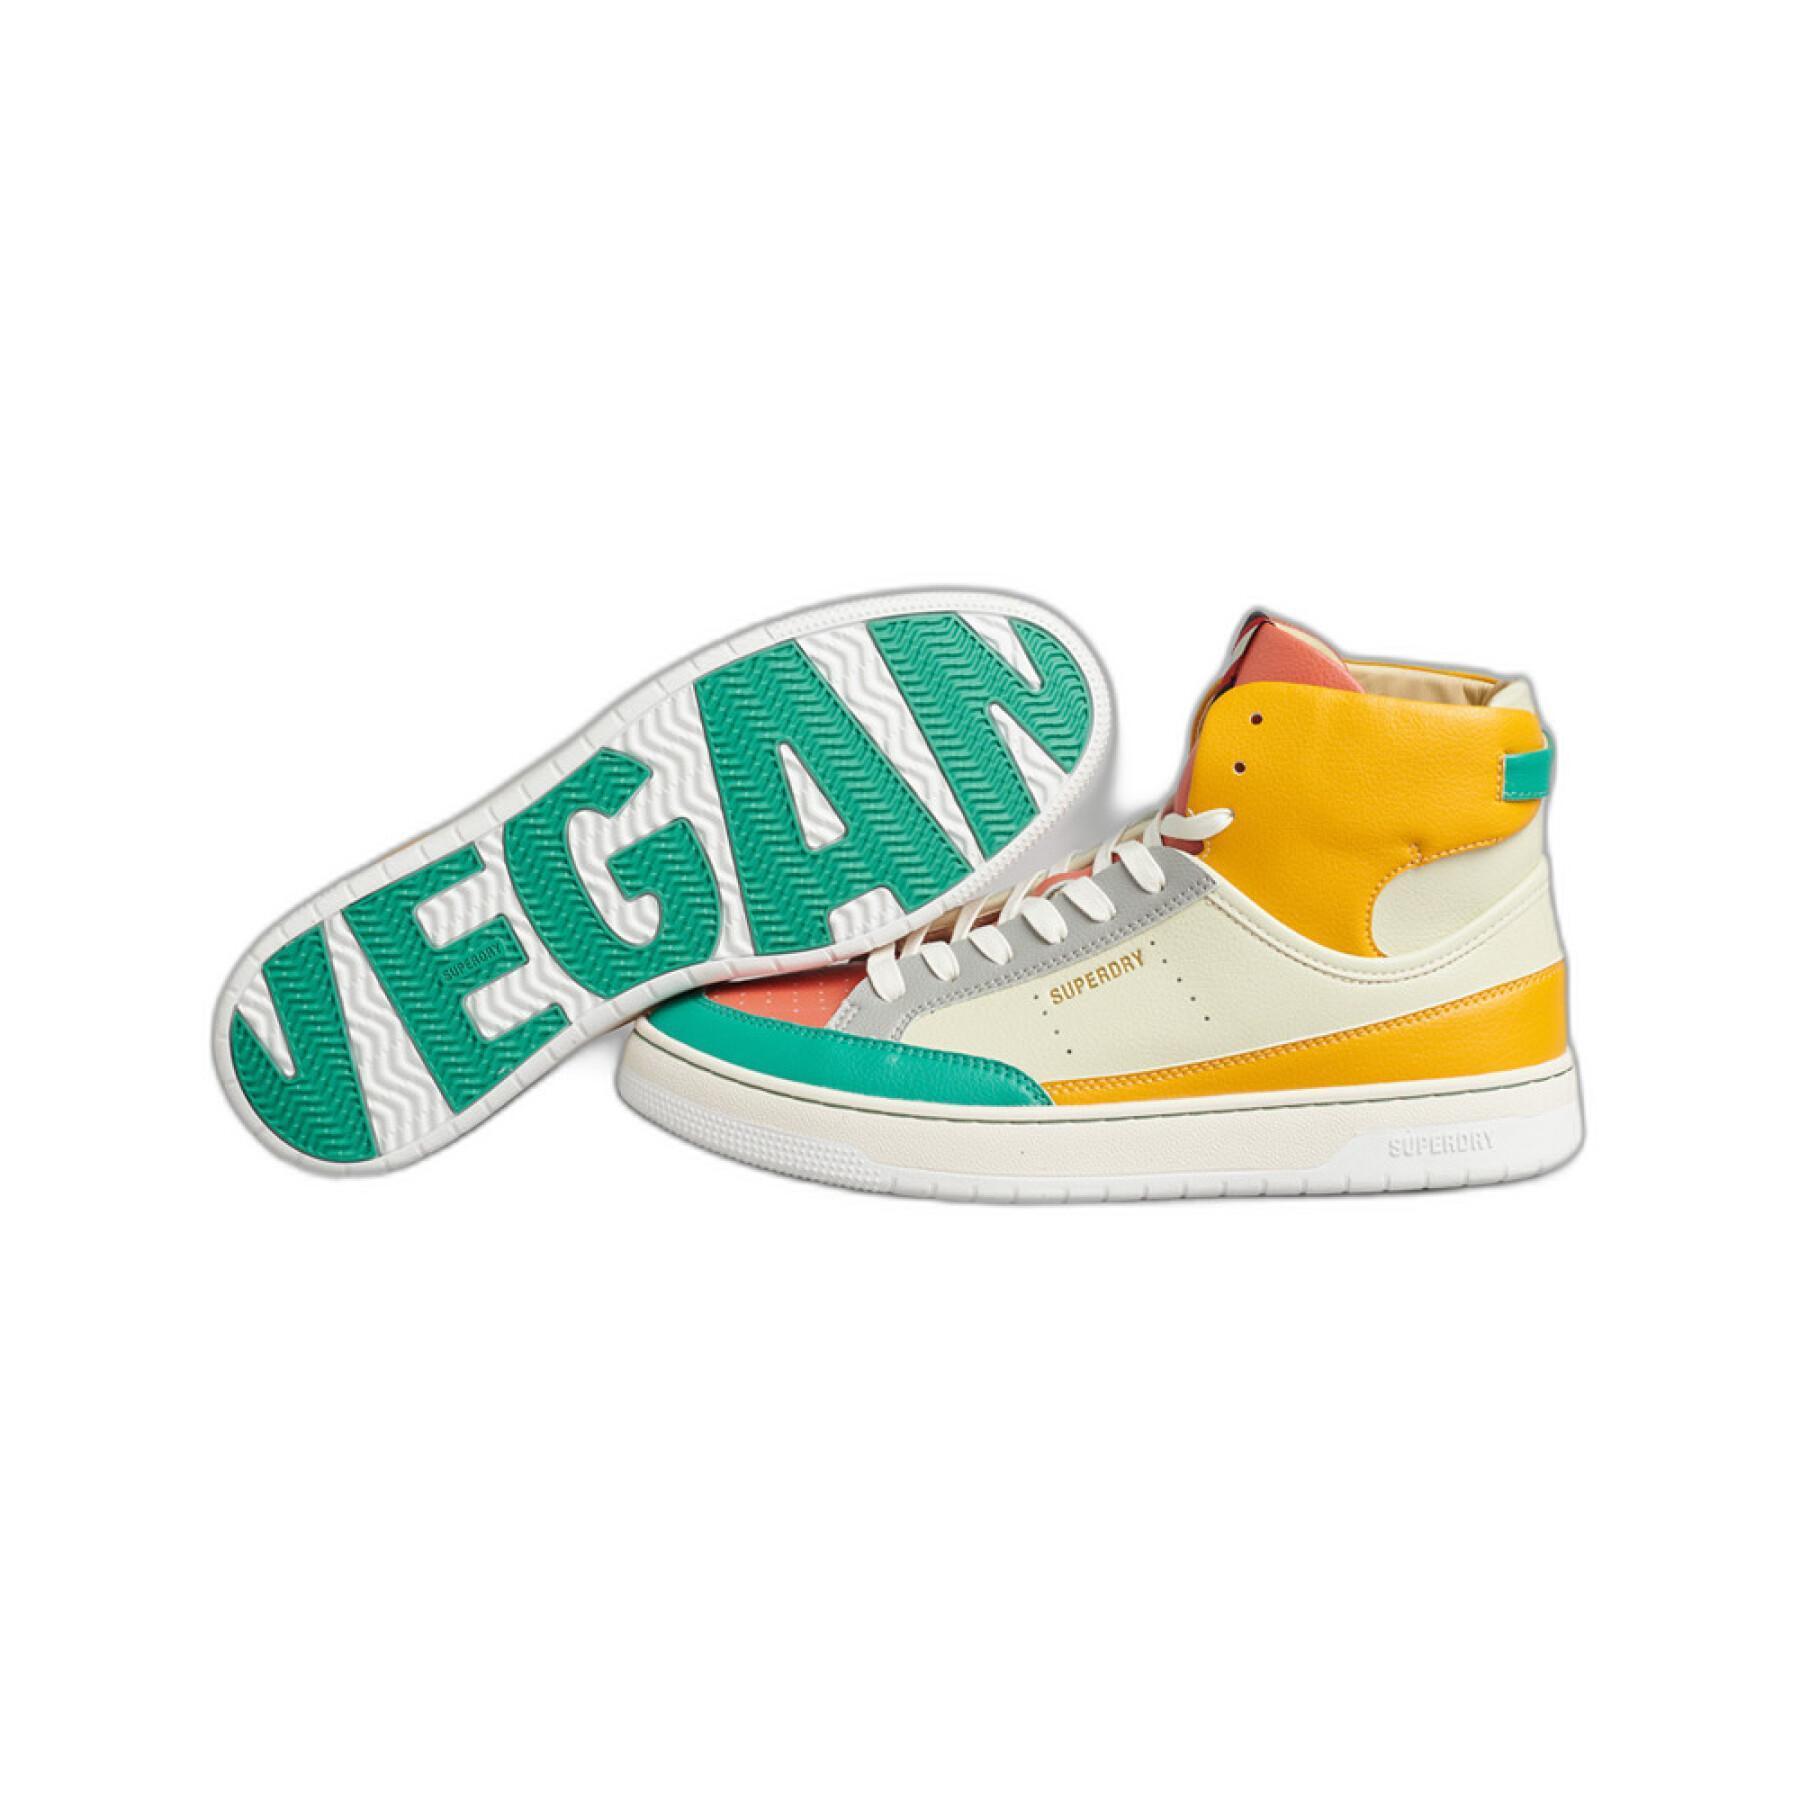 Zapatillas de deporte de mujer Superdry Vegan Vintage